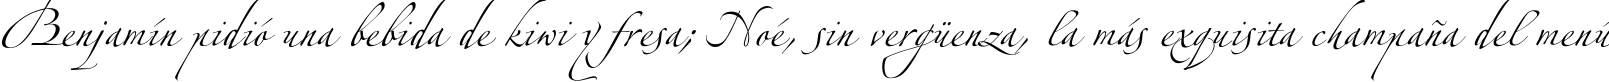 Пример написания шрифтом Alexandra Zeferino One текста на испанском